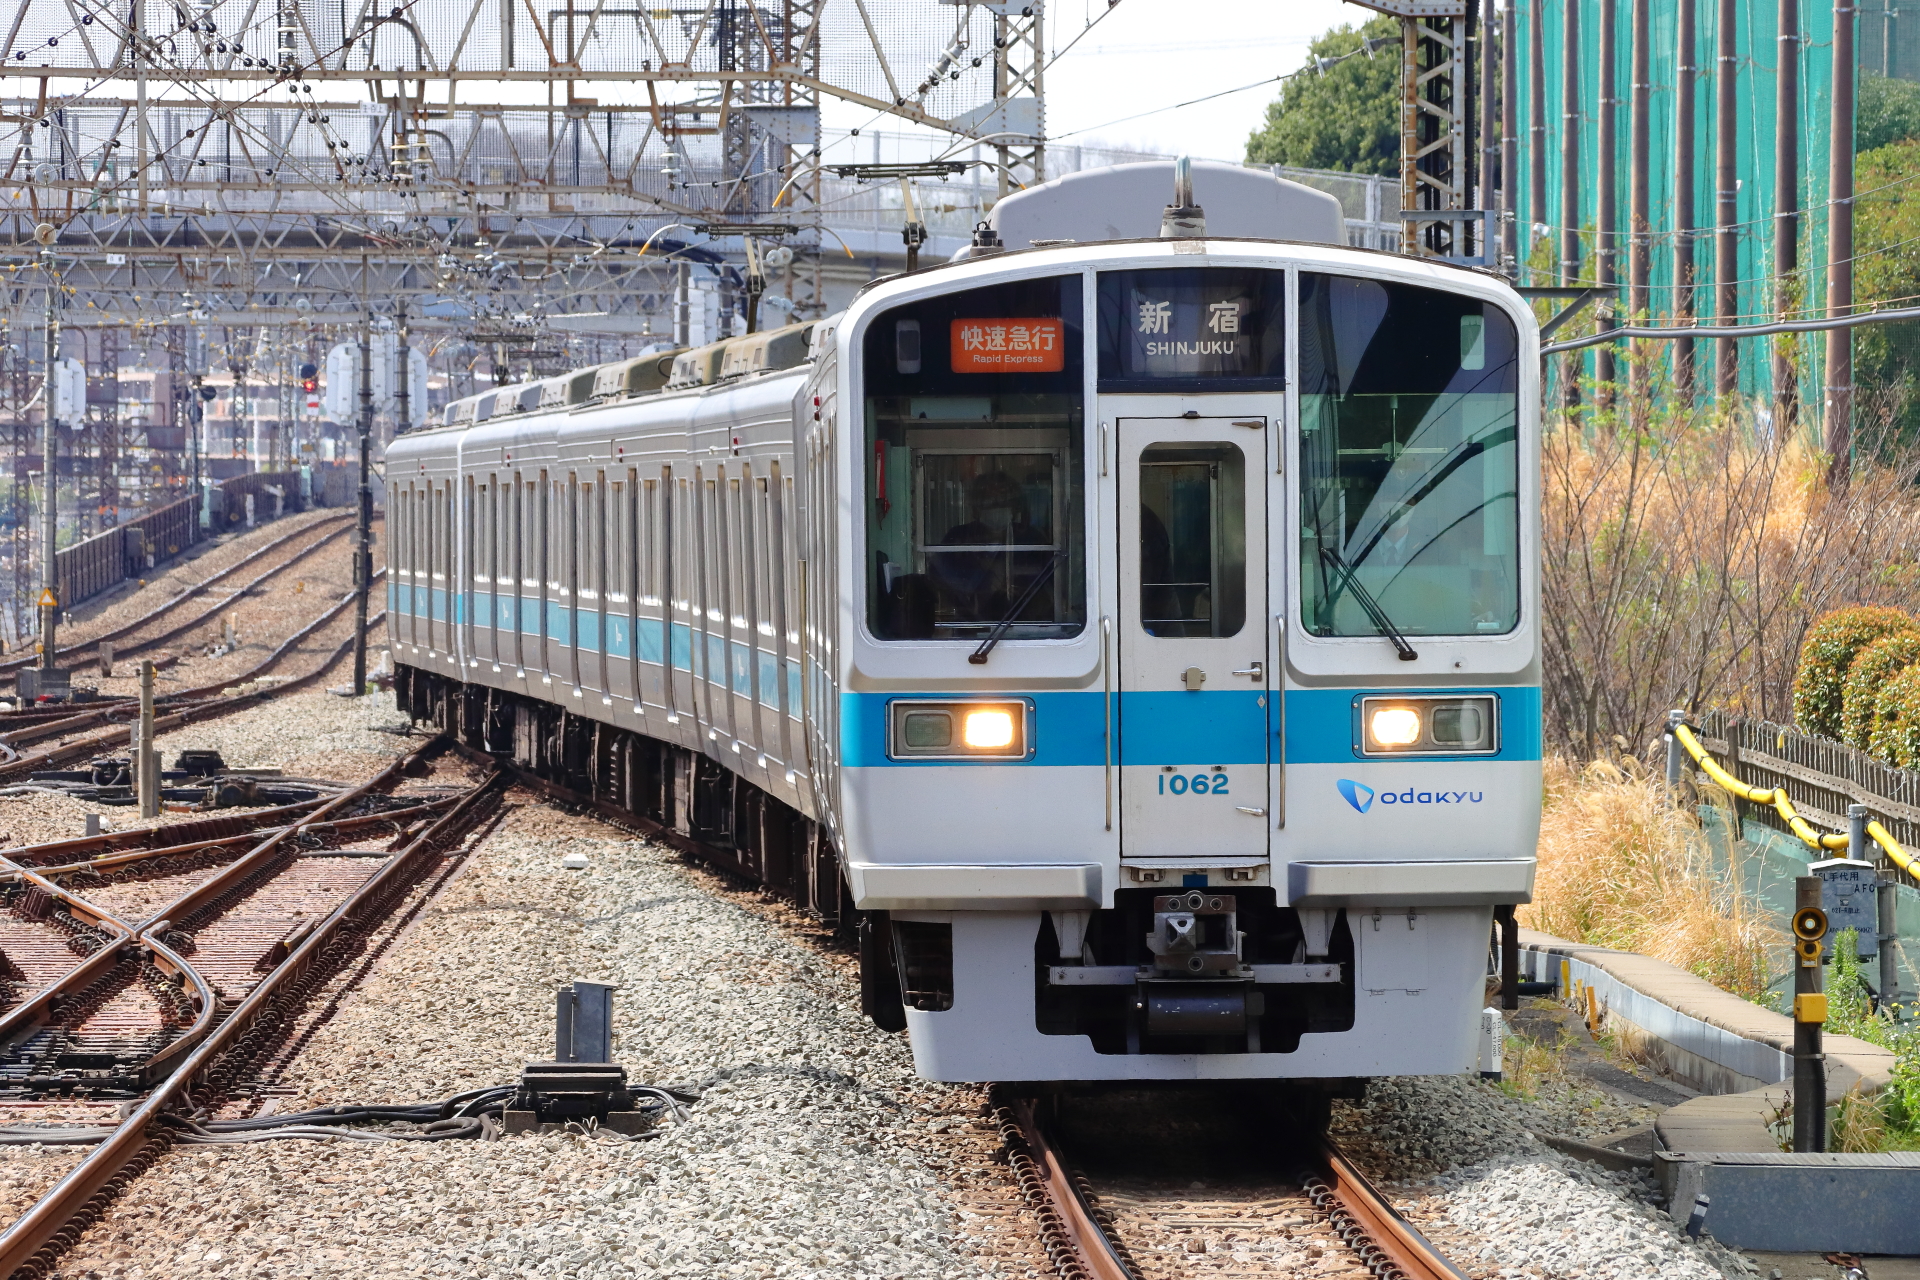 いよいよ少数派に 小田急1000形の未更新車はどこを走っているのか Odapedia 小田急を中心とした鉄道に関するブログメディア